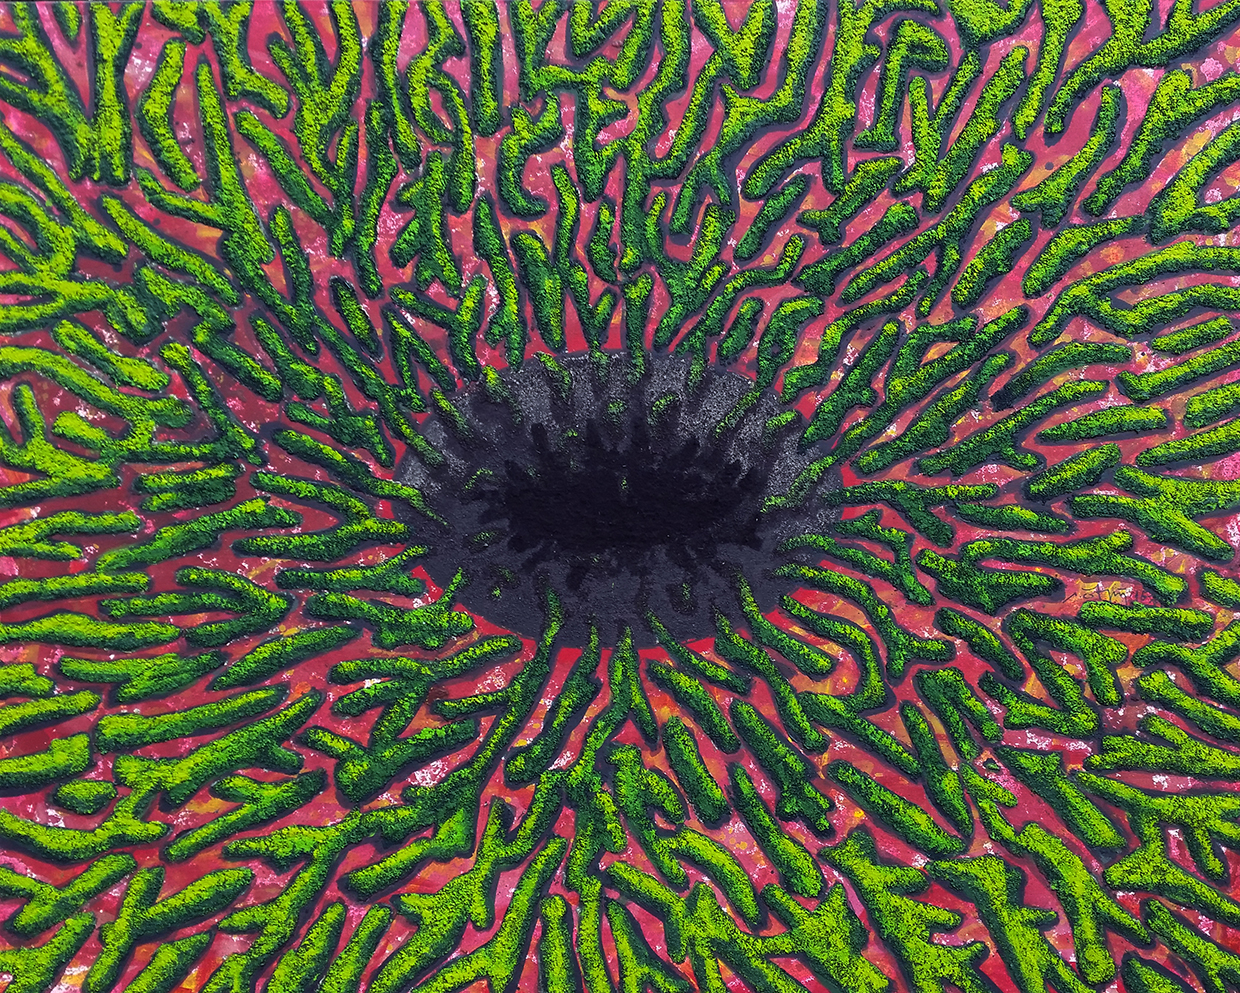 130x160 cm, 2016-17, tuvale akrilik talaş, yün